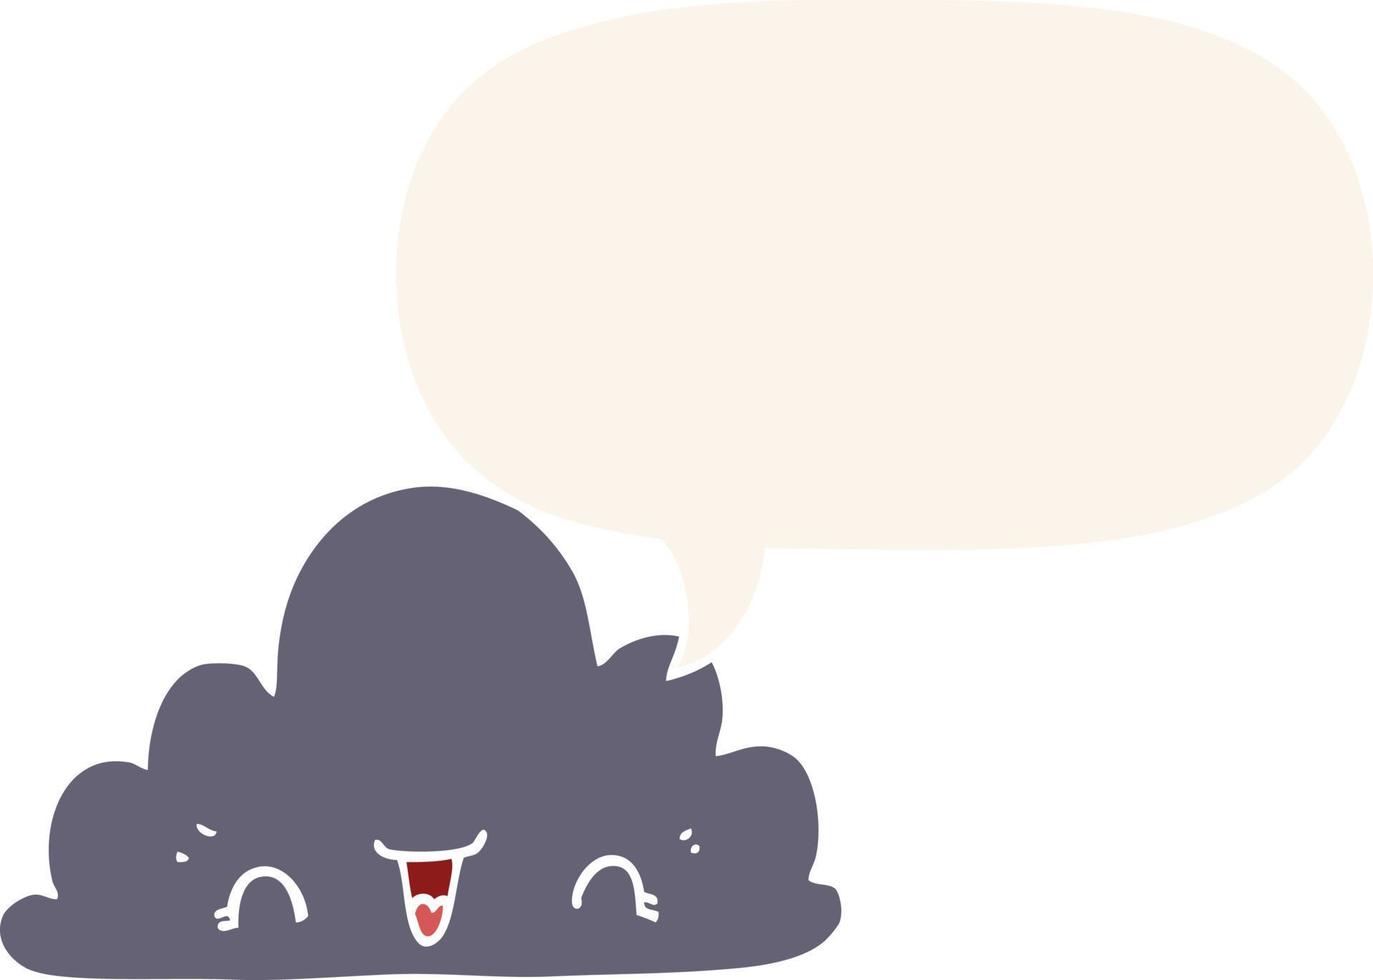 nuage de dessin animé mignon et bulle de dialogue dans un style rétro vecteur